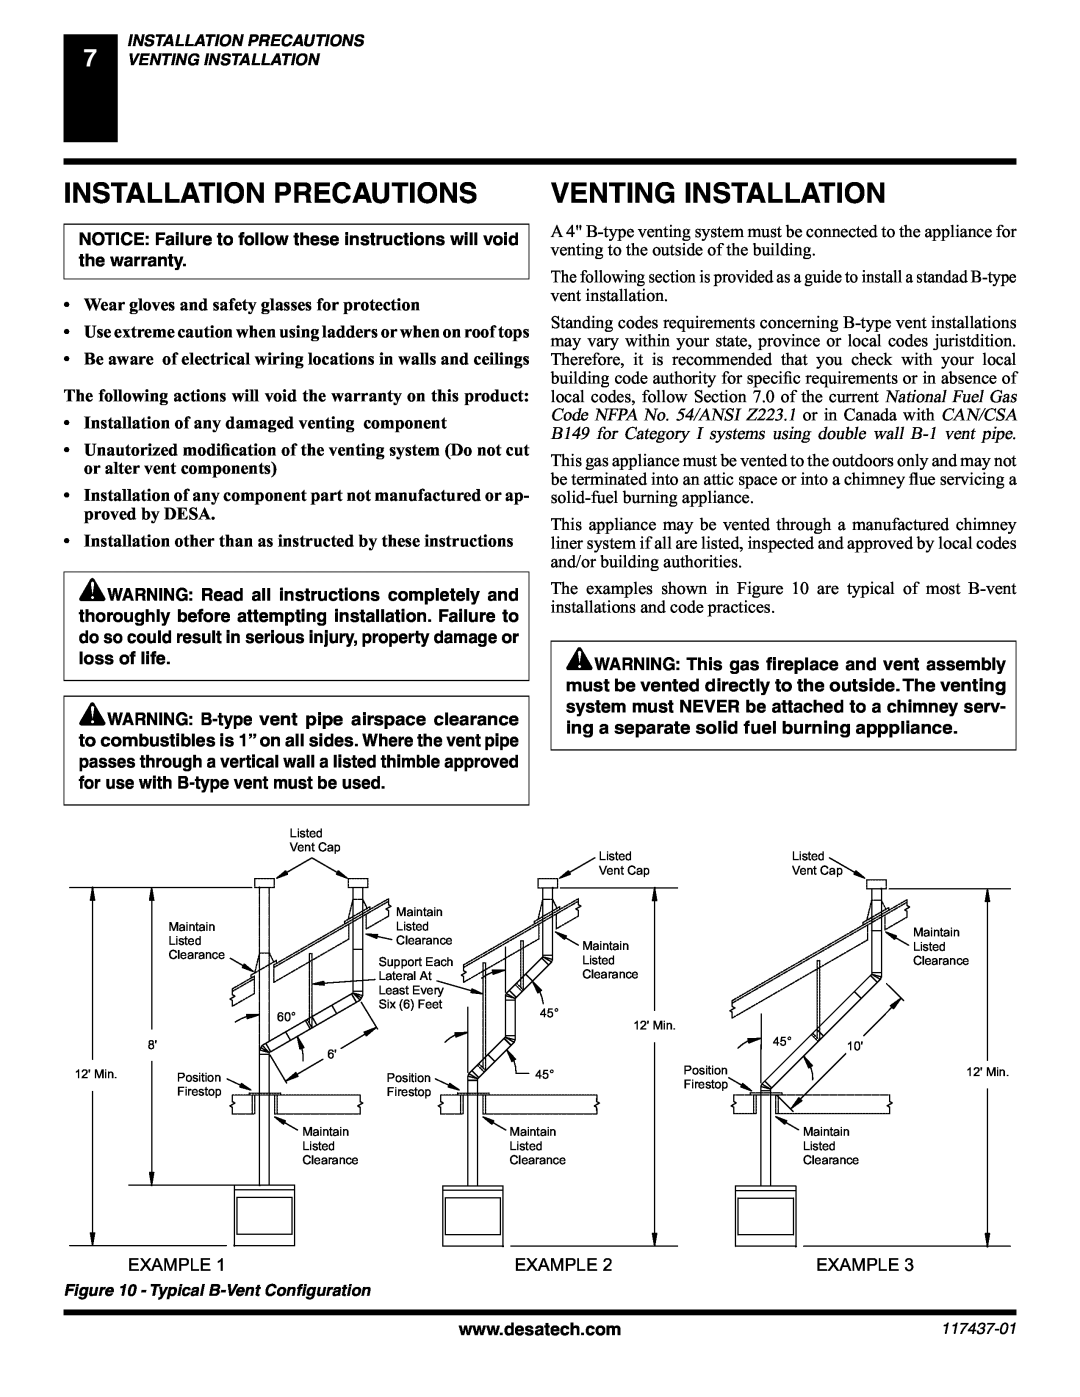 Desa (V) CB36(N installation manual Installation Precautions, Venting Installation 